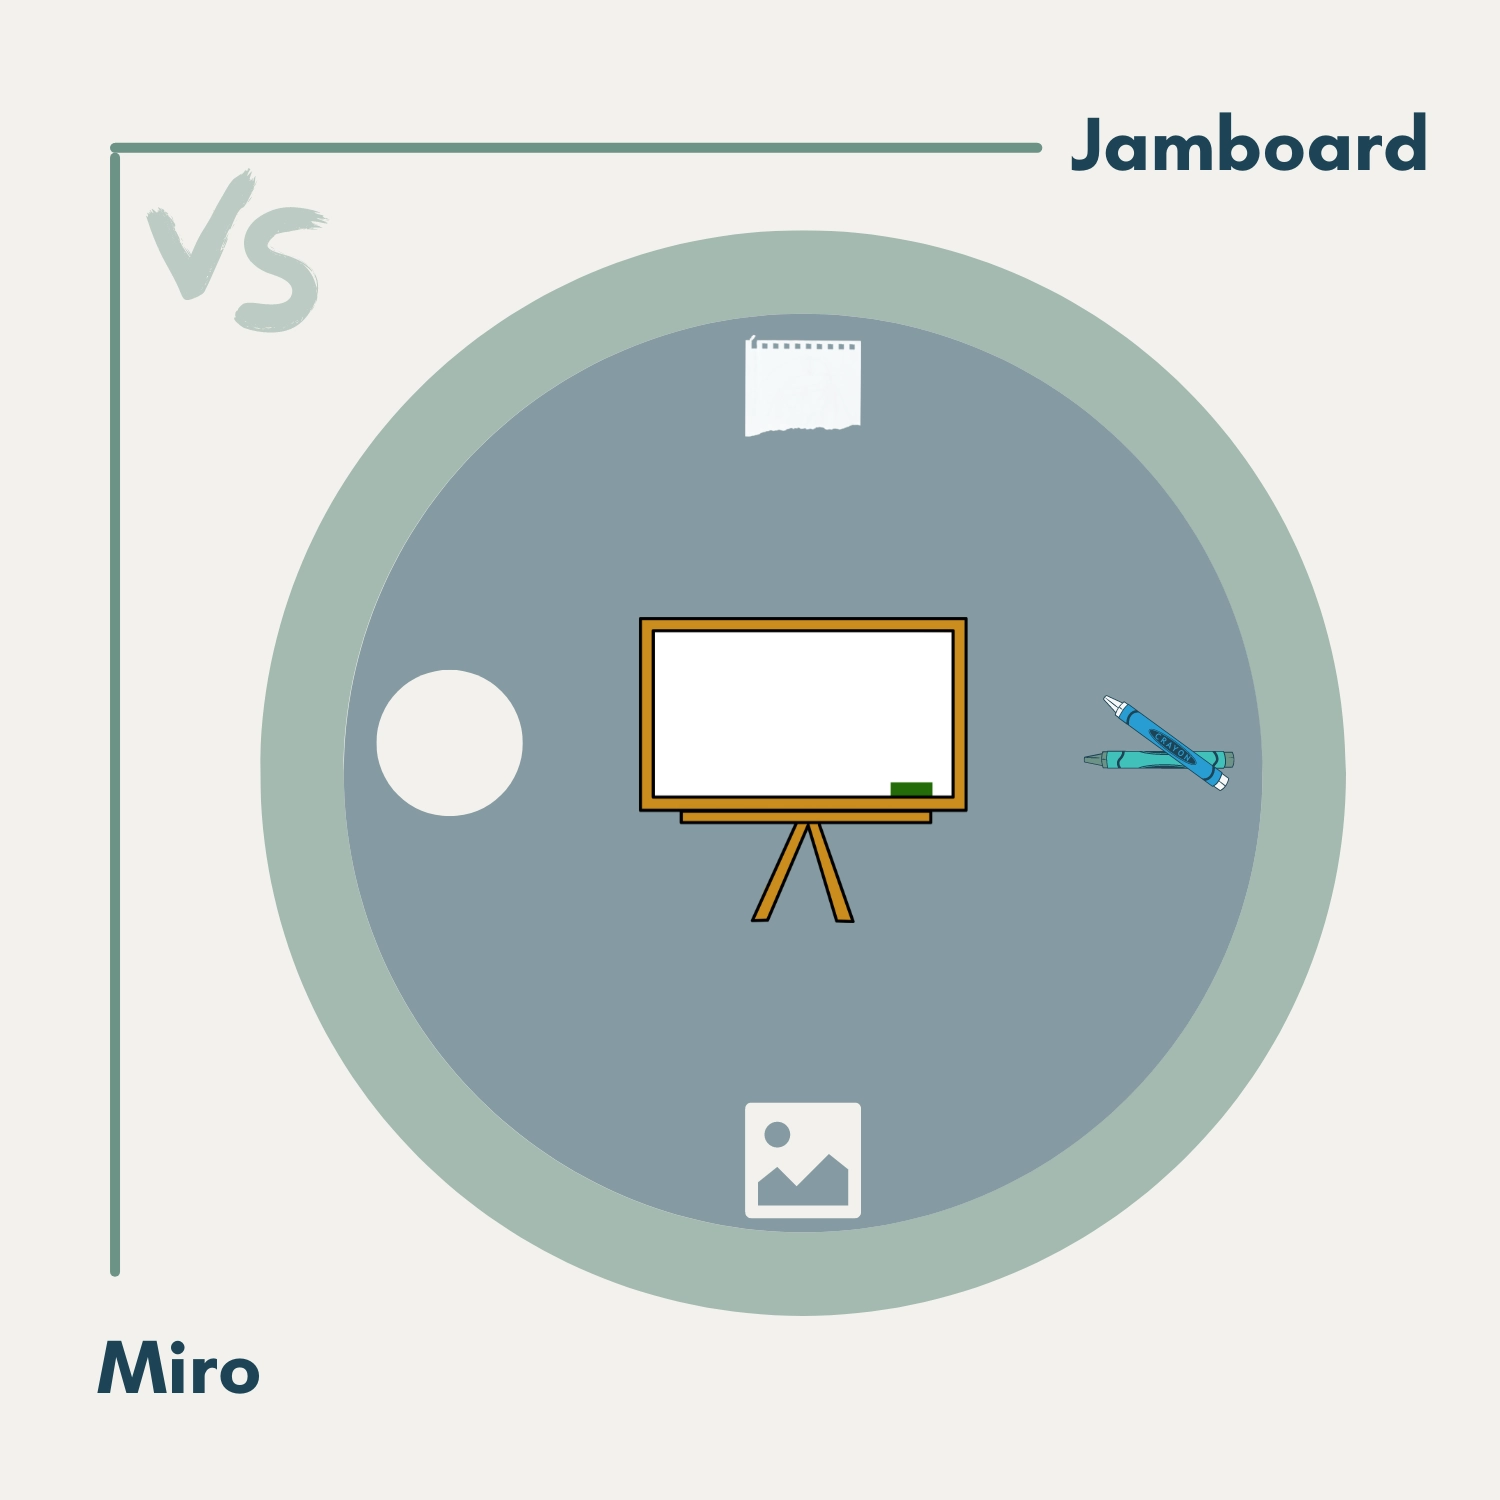 Jamboard vs Miro